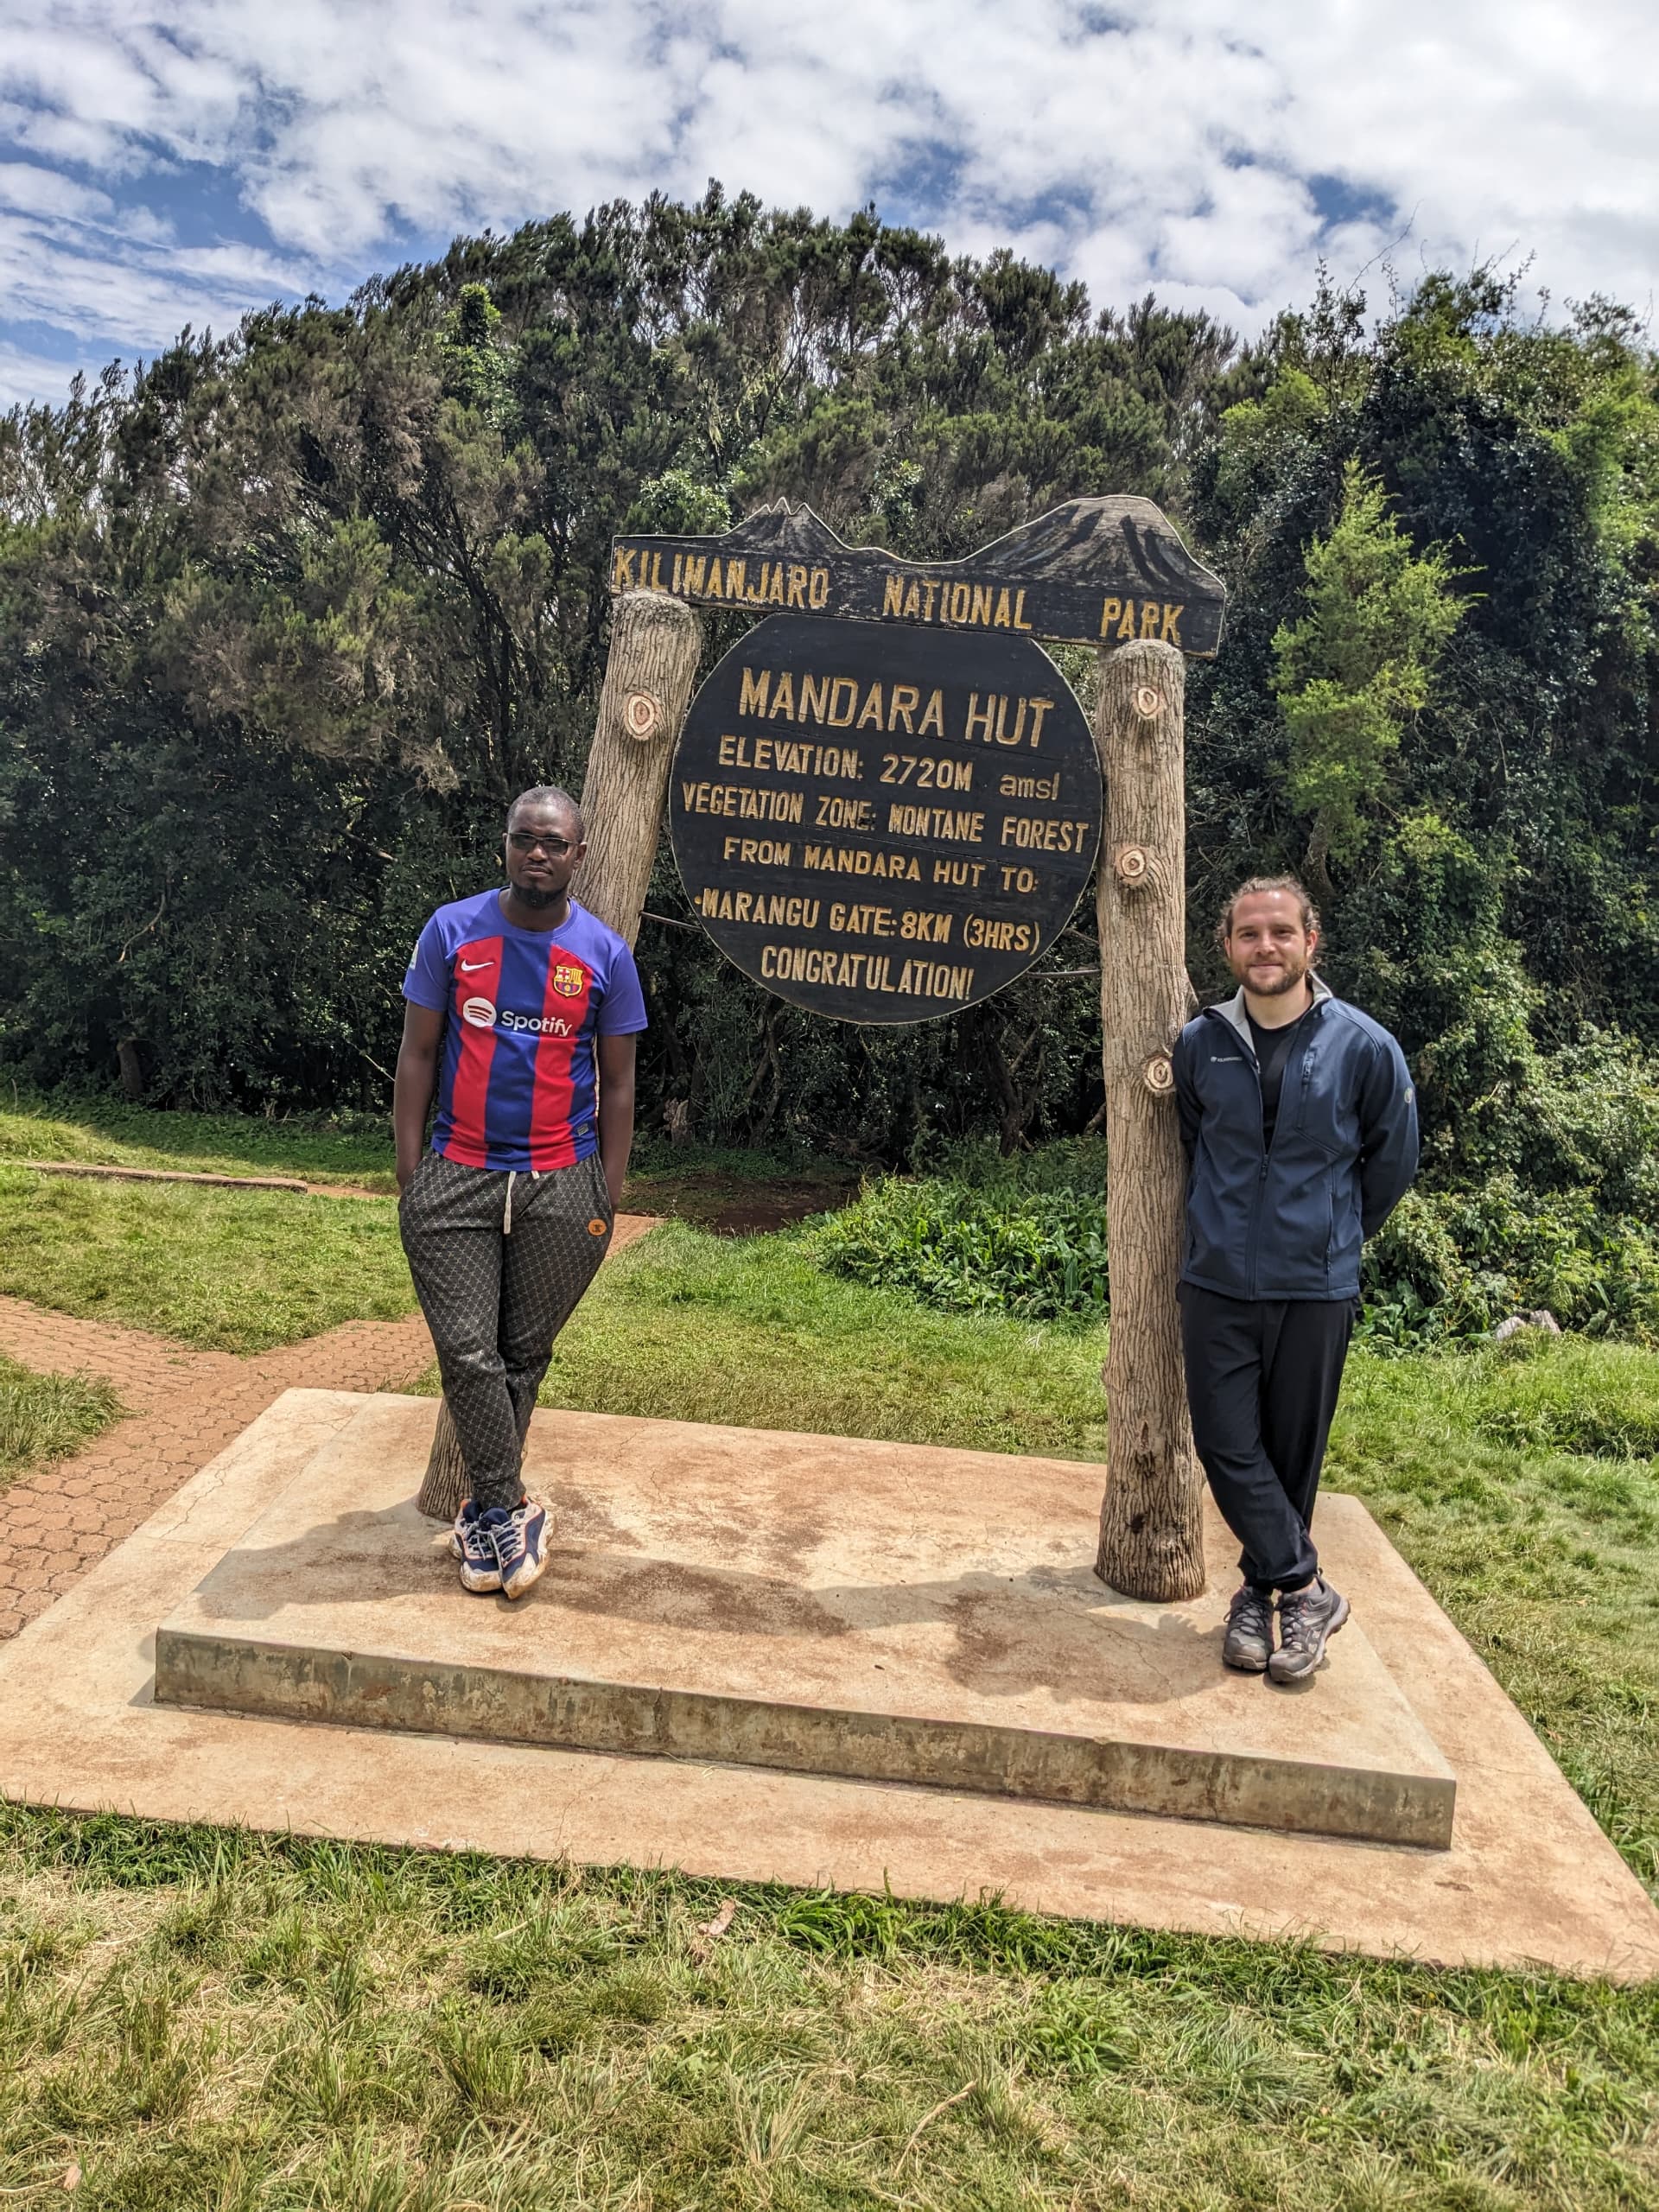 Kilimanjaro Day Hike from Moshi Kilimanjaro- Marangu Route